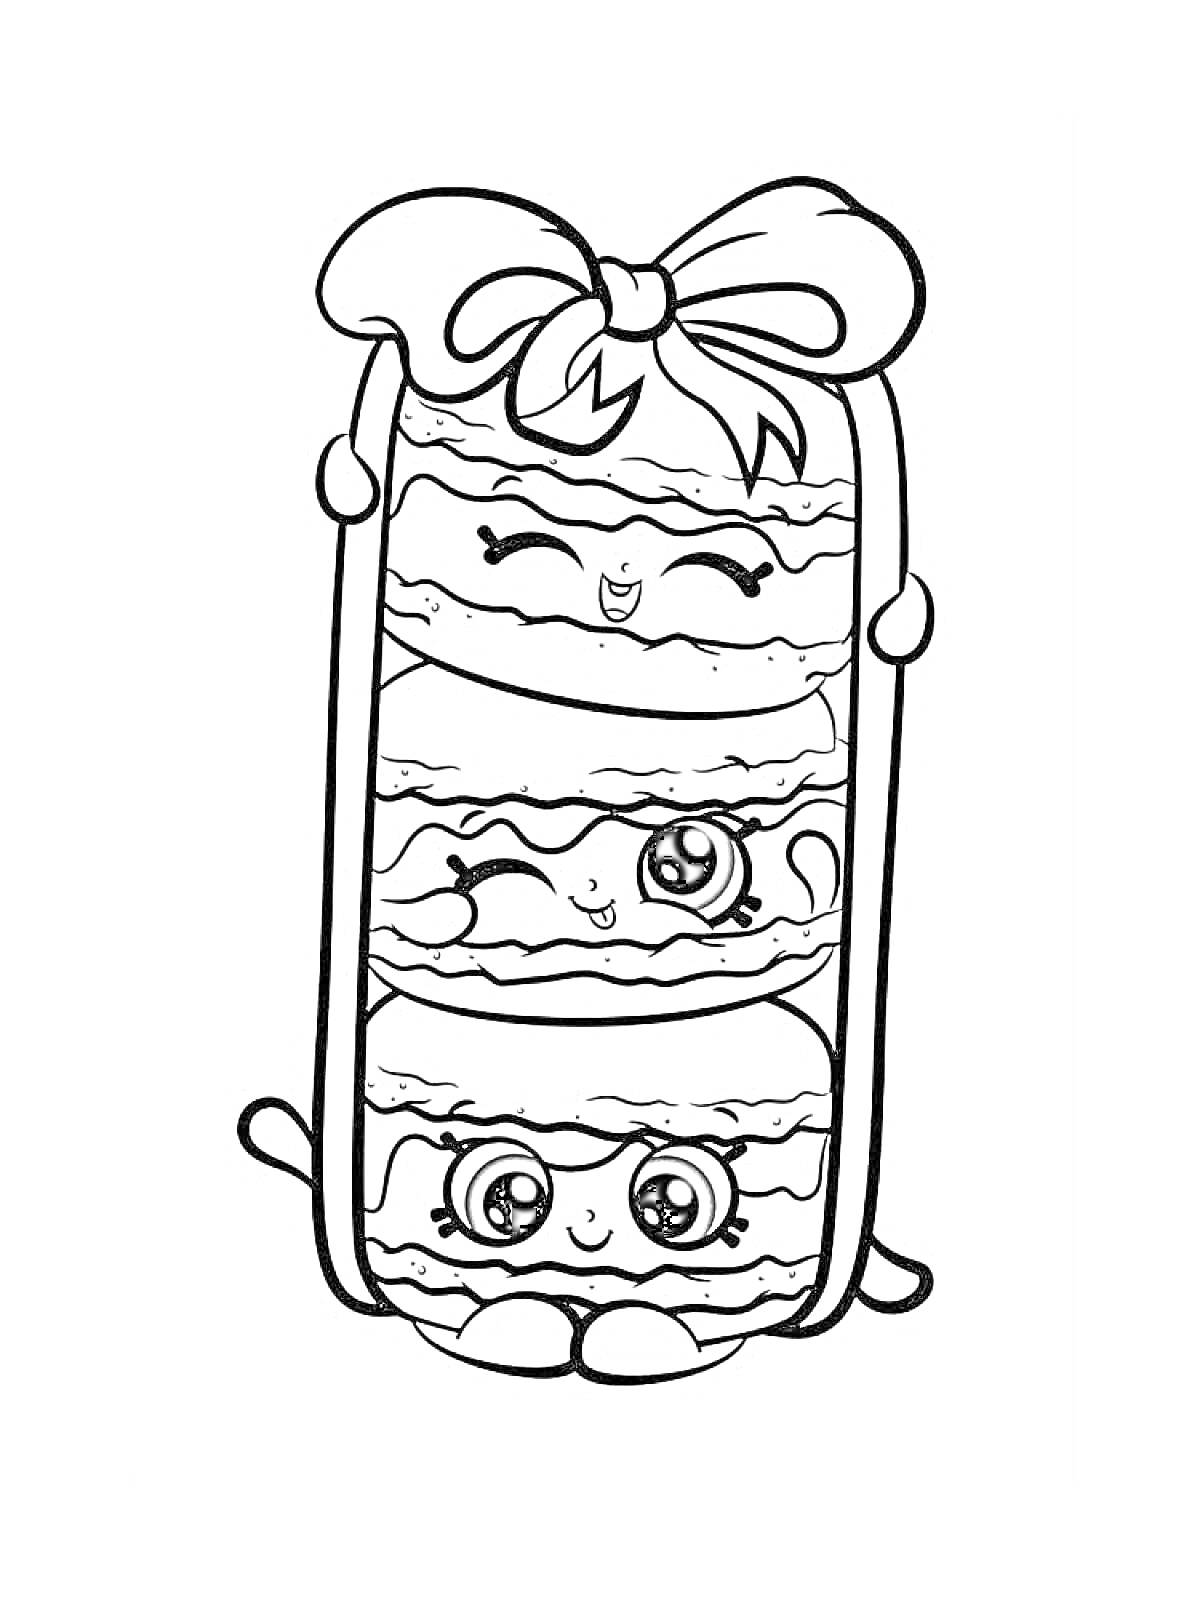 Ласковый пирог с тремя улыбающимися лицами и бантиком